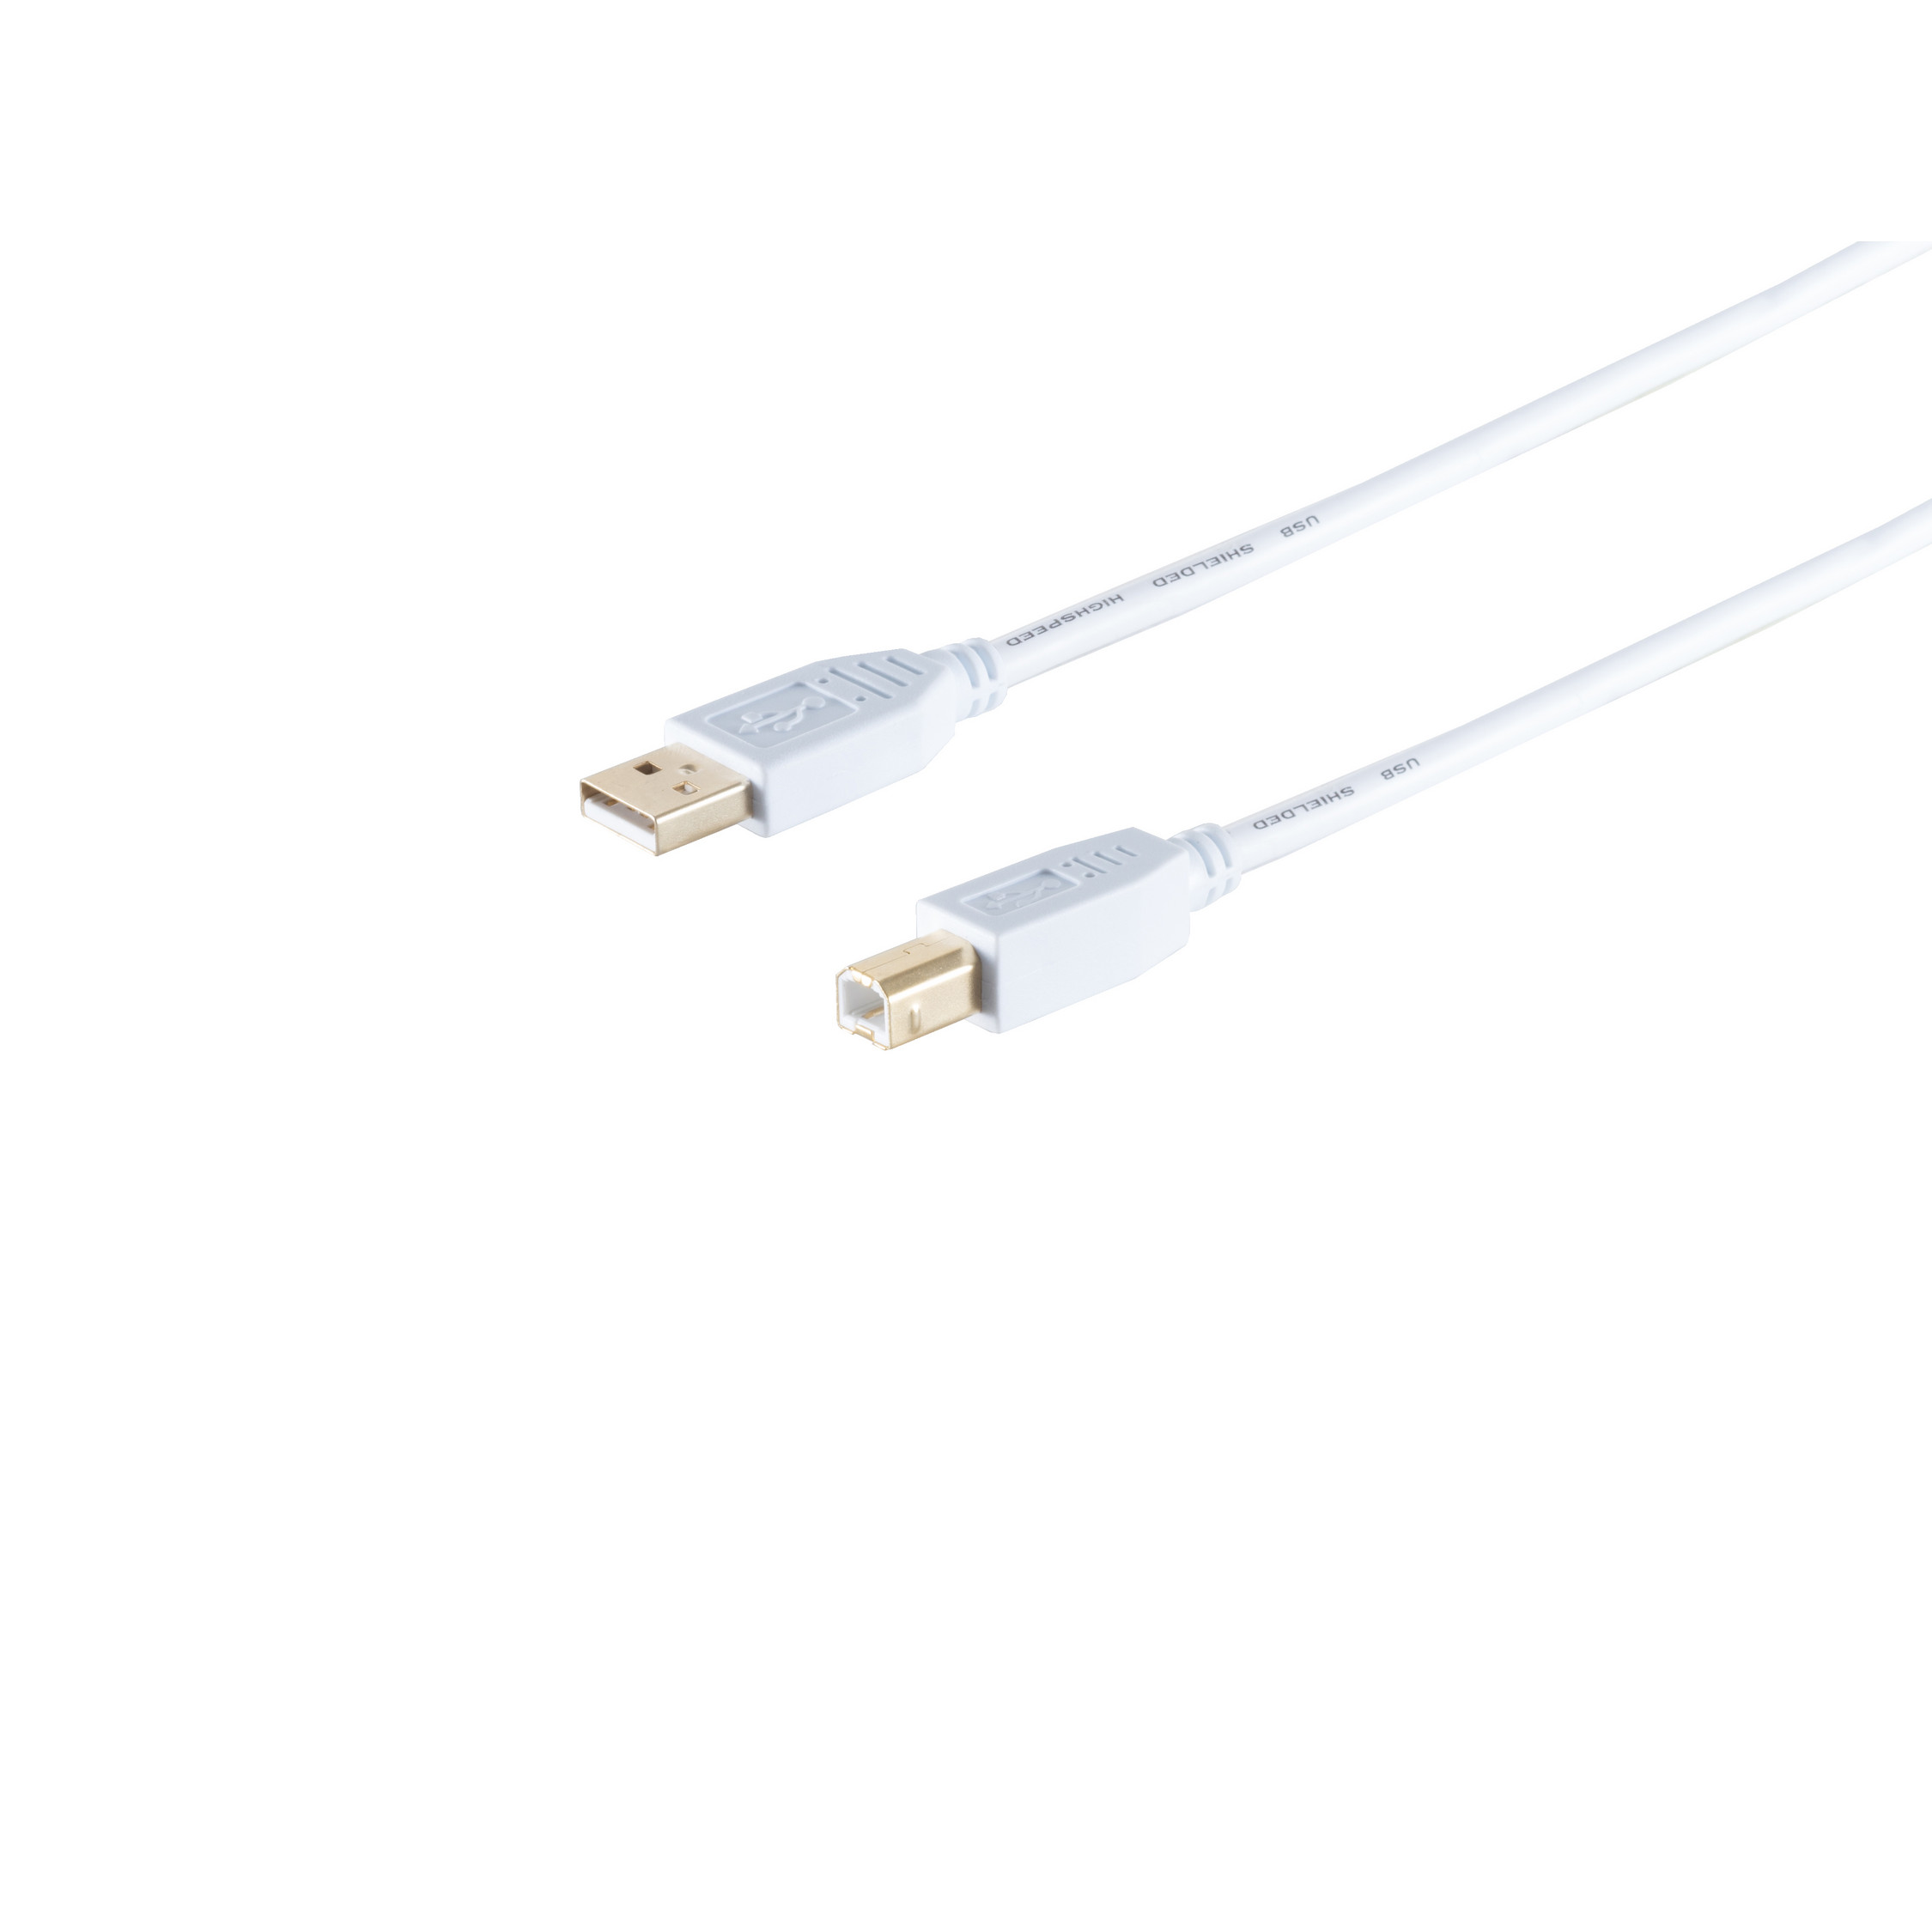 S/CONN MAXIMUM CONNECTIVITY USB High USB Kabel A/B Stecker, 1,0m Kabel, Speed 2.0 USB weiß, 2.0